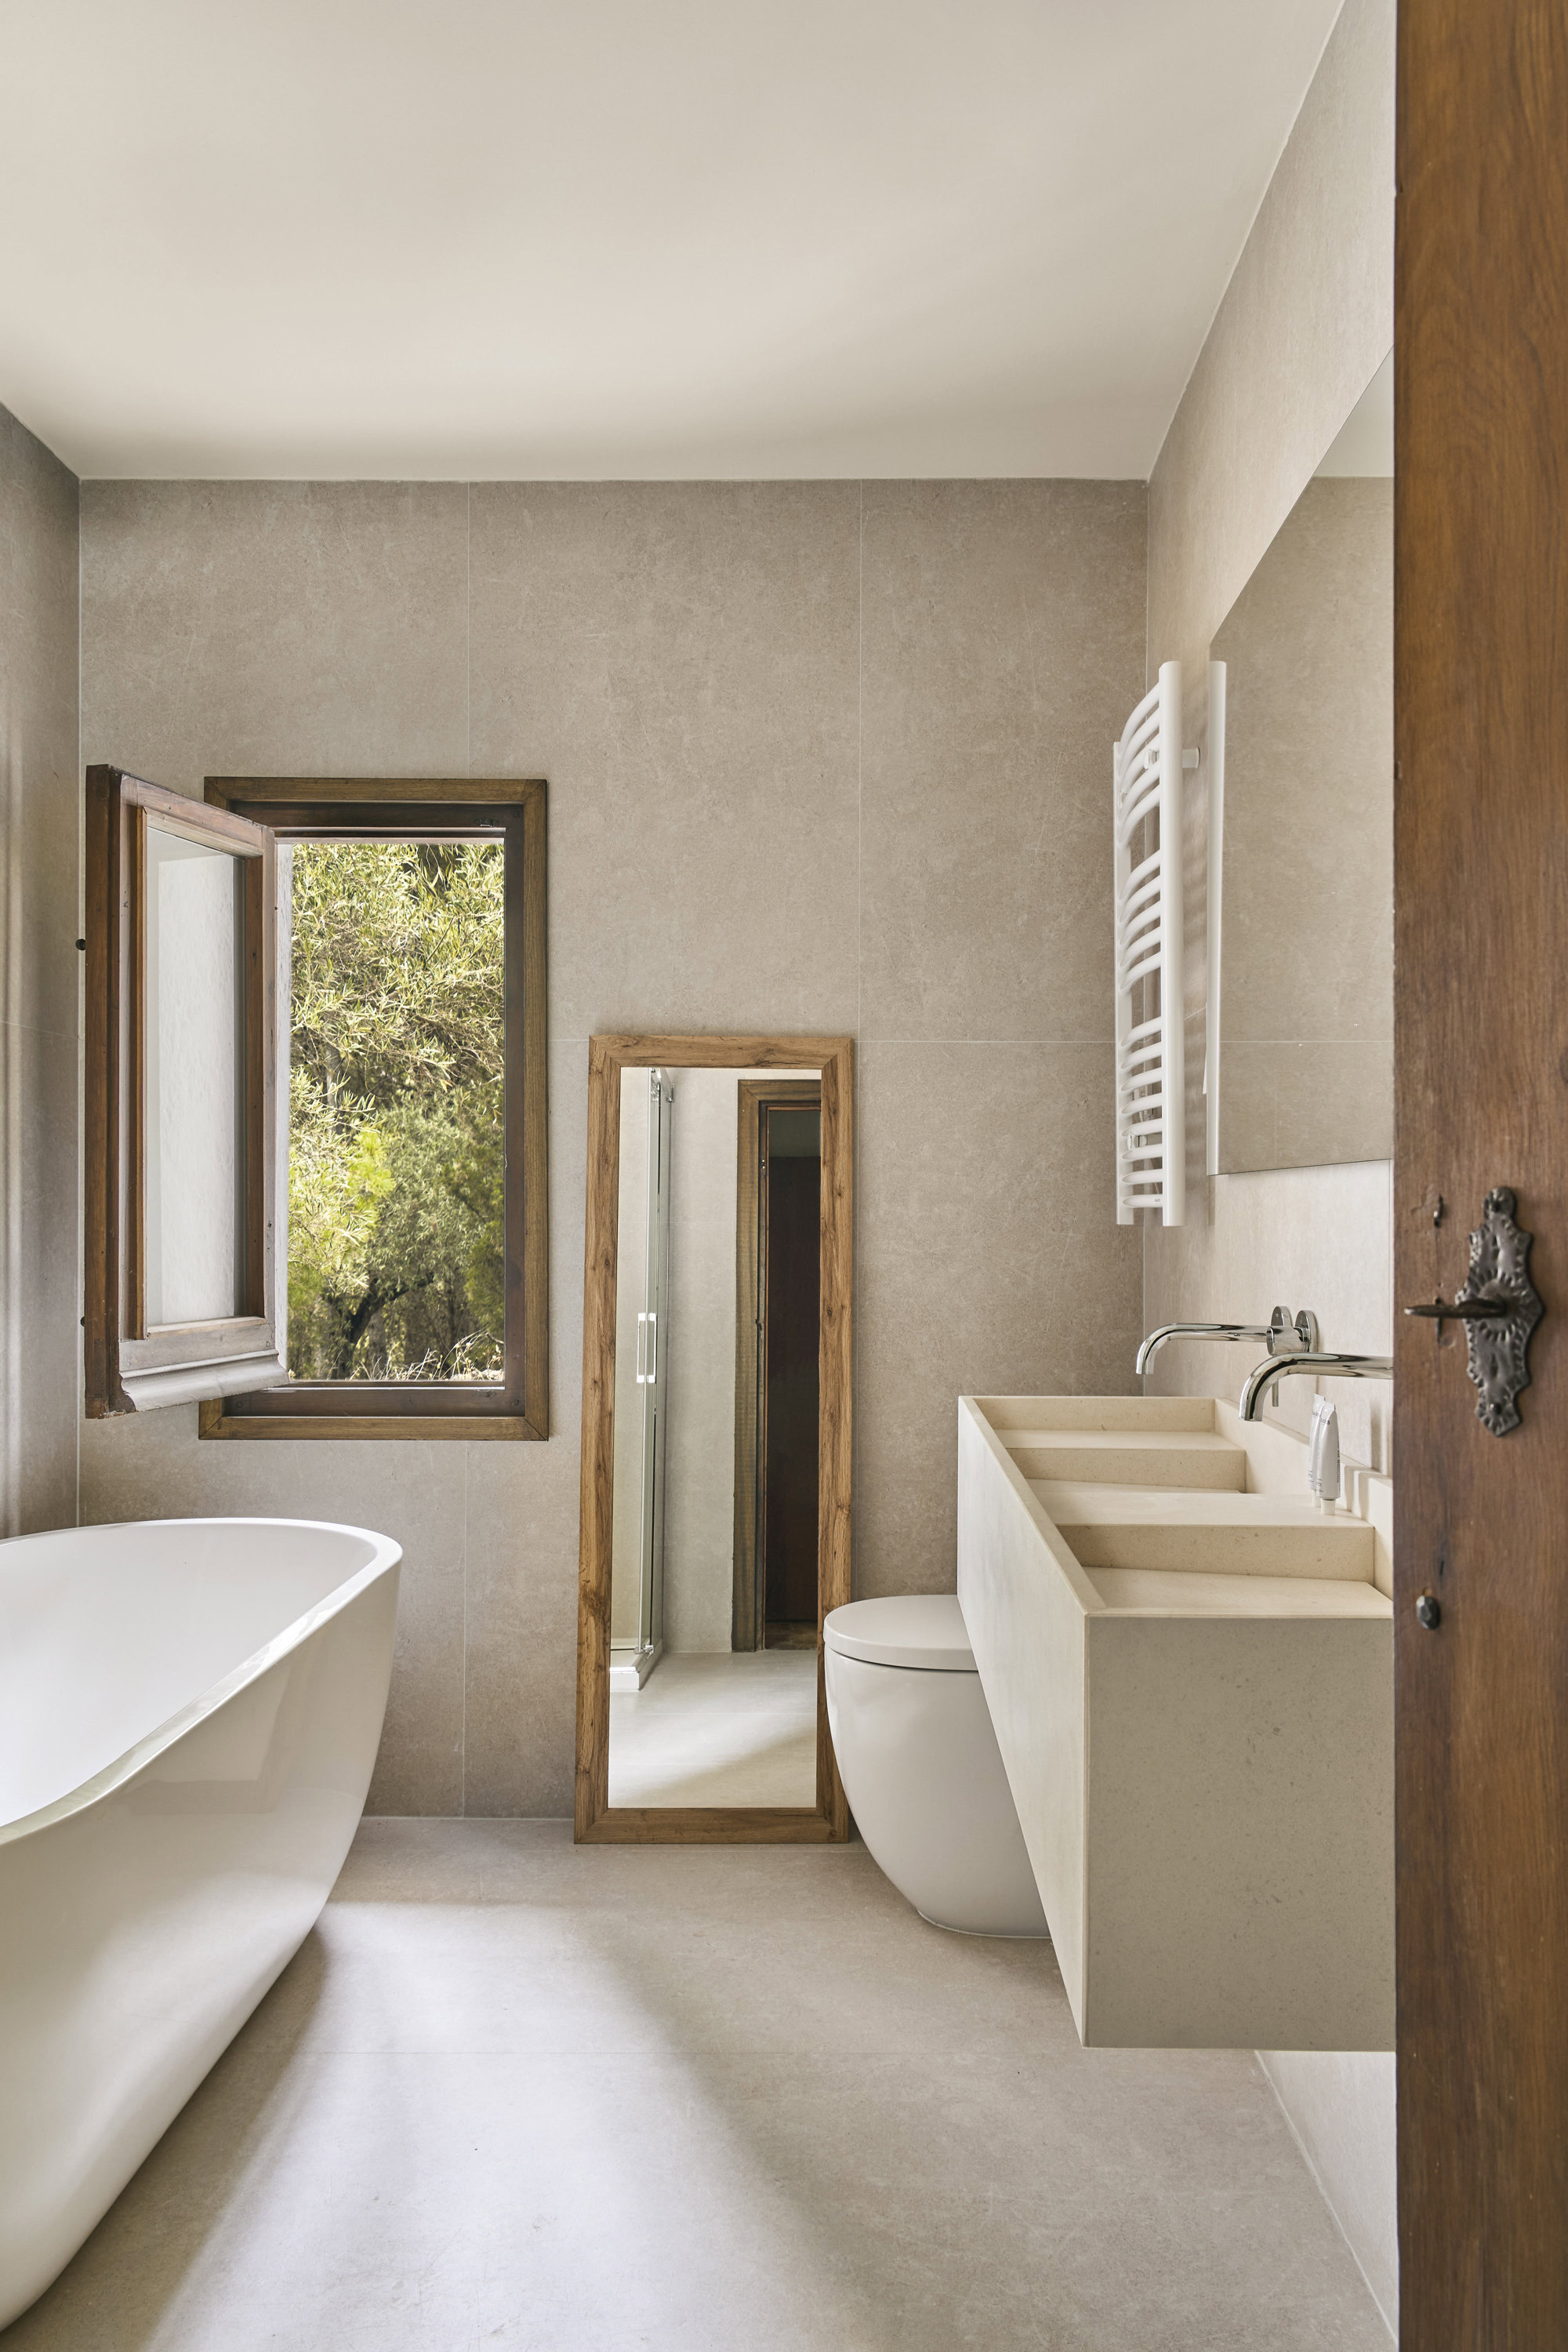  Baño con lavabo de piedra caliza blanca paloma, diseño de Bueno; grifería, de Rovira, y bañera, de Hudson Reed.